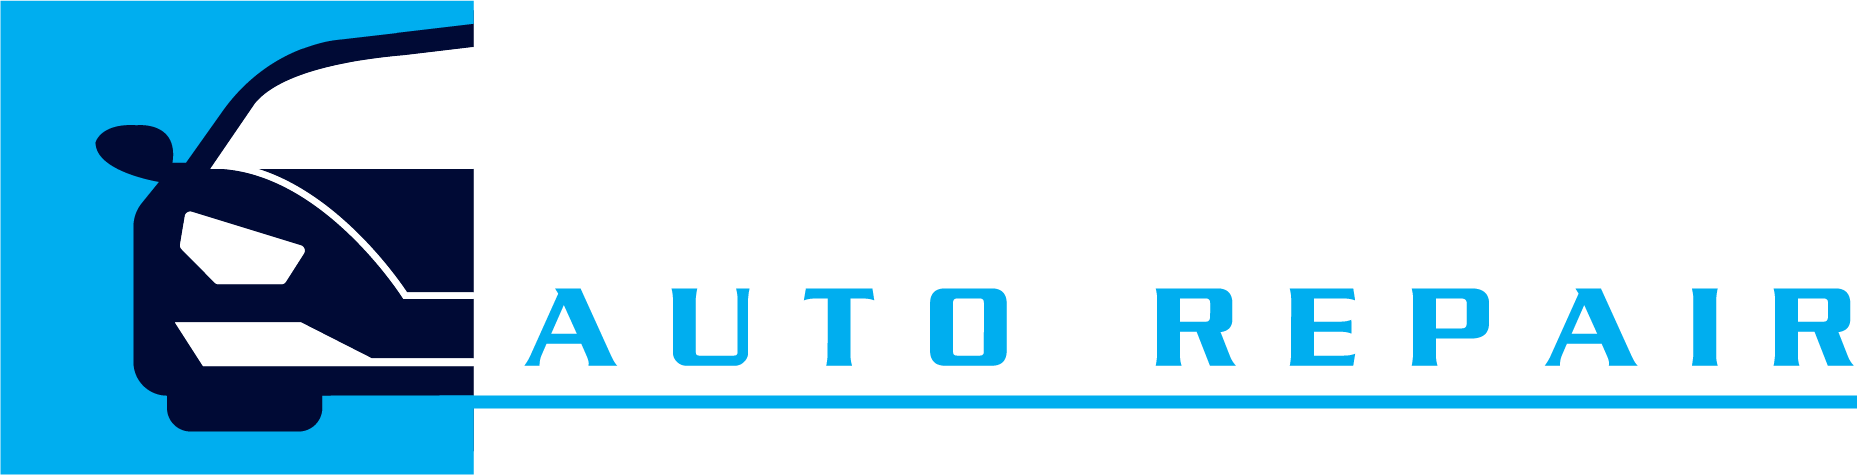 Beach Auto Repair Logo